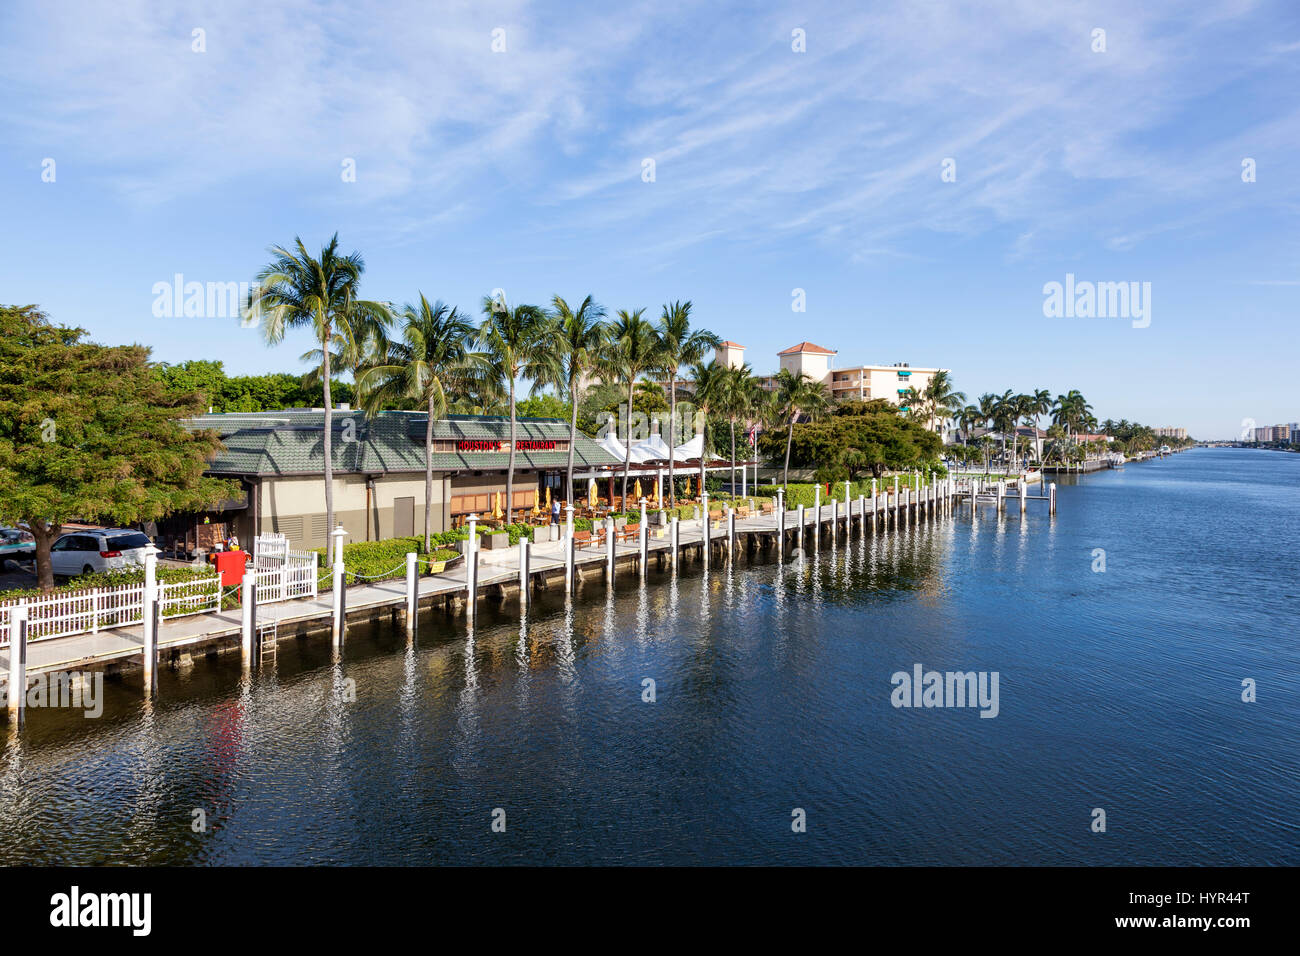 Pompano Beach, Fl, USA - 15. März 2017: Waterfront Restaurant und Gebäude in Pompano Beach, Florida, Vereinigte Staaten Stockfoto